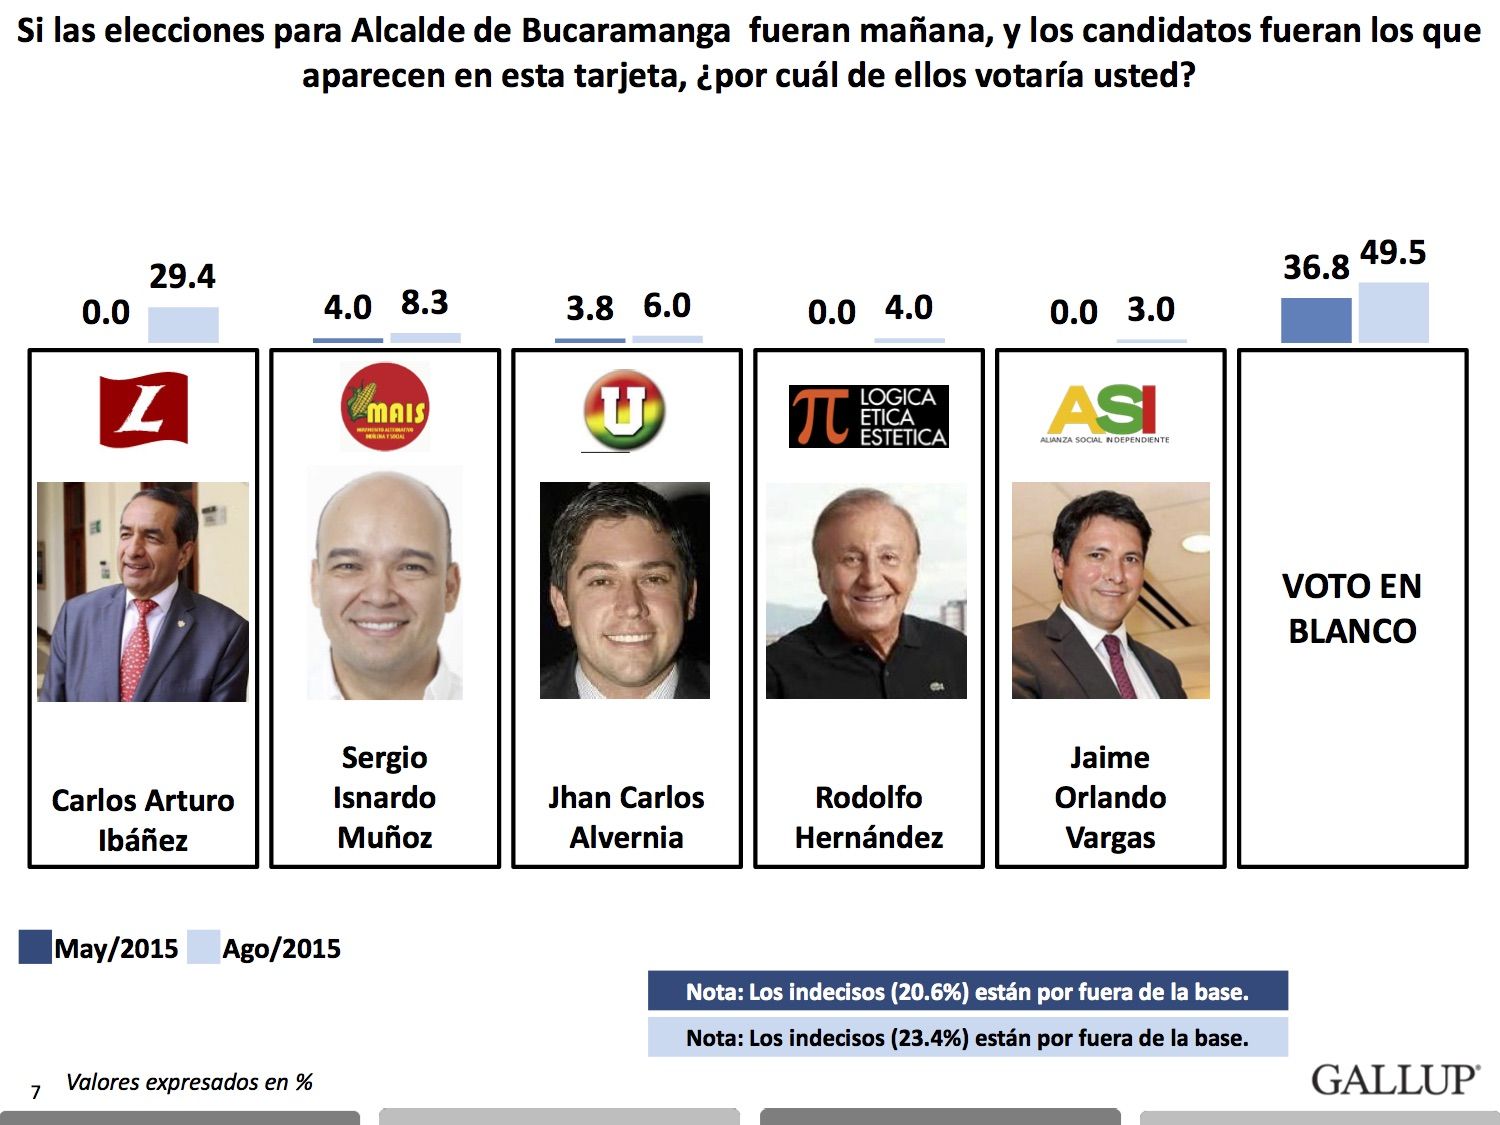 El voto en blanco sigue en aumento en Bucaramanga